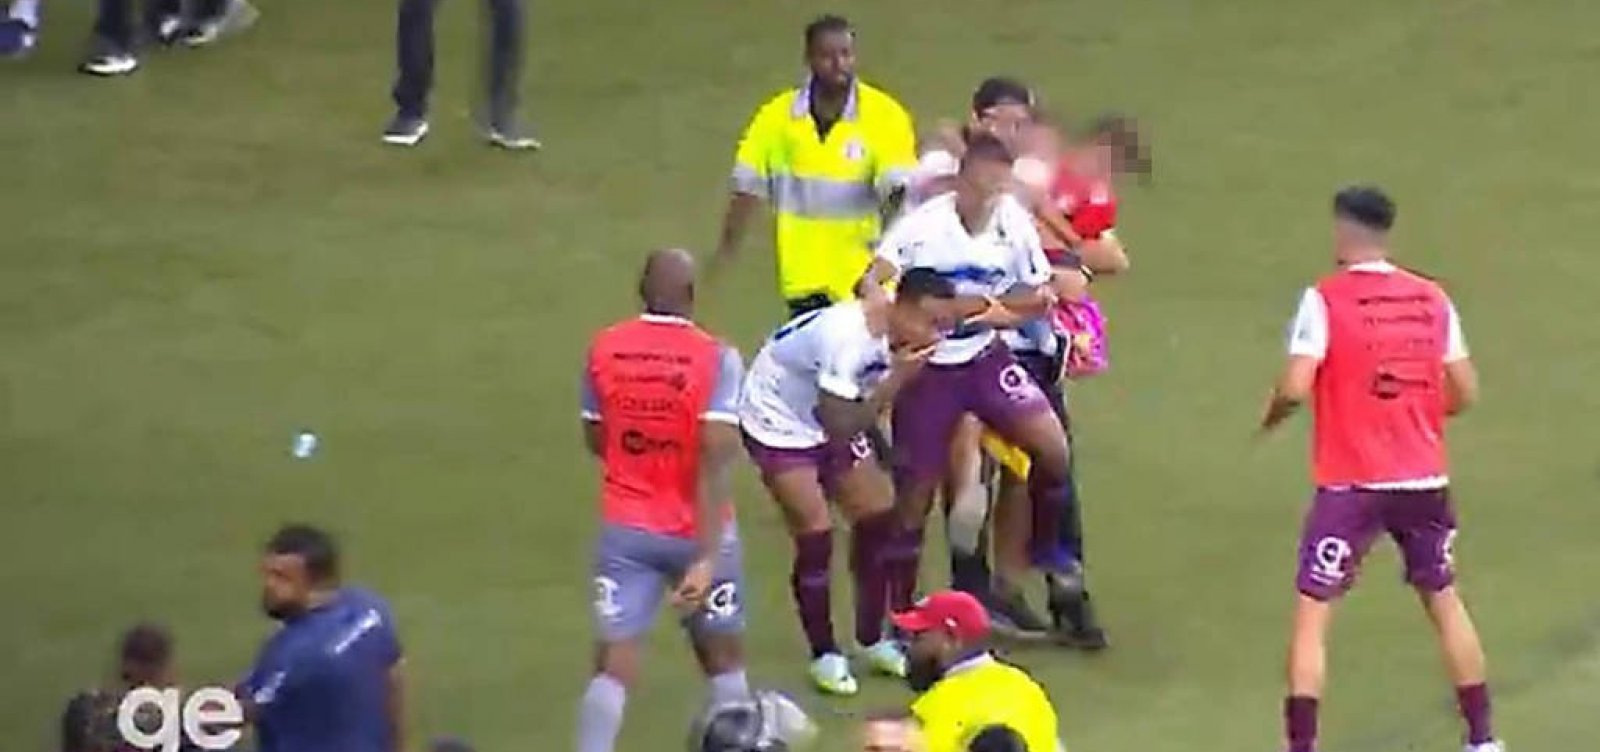 Torcedor com criança no colo invade campo e agride jogador durante confusão no Beira-Rio